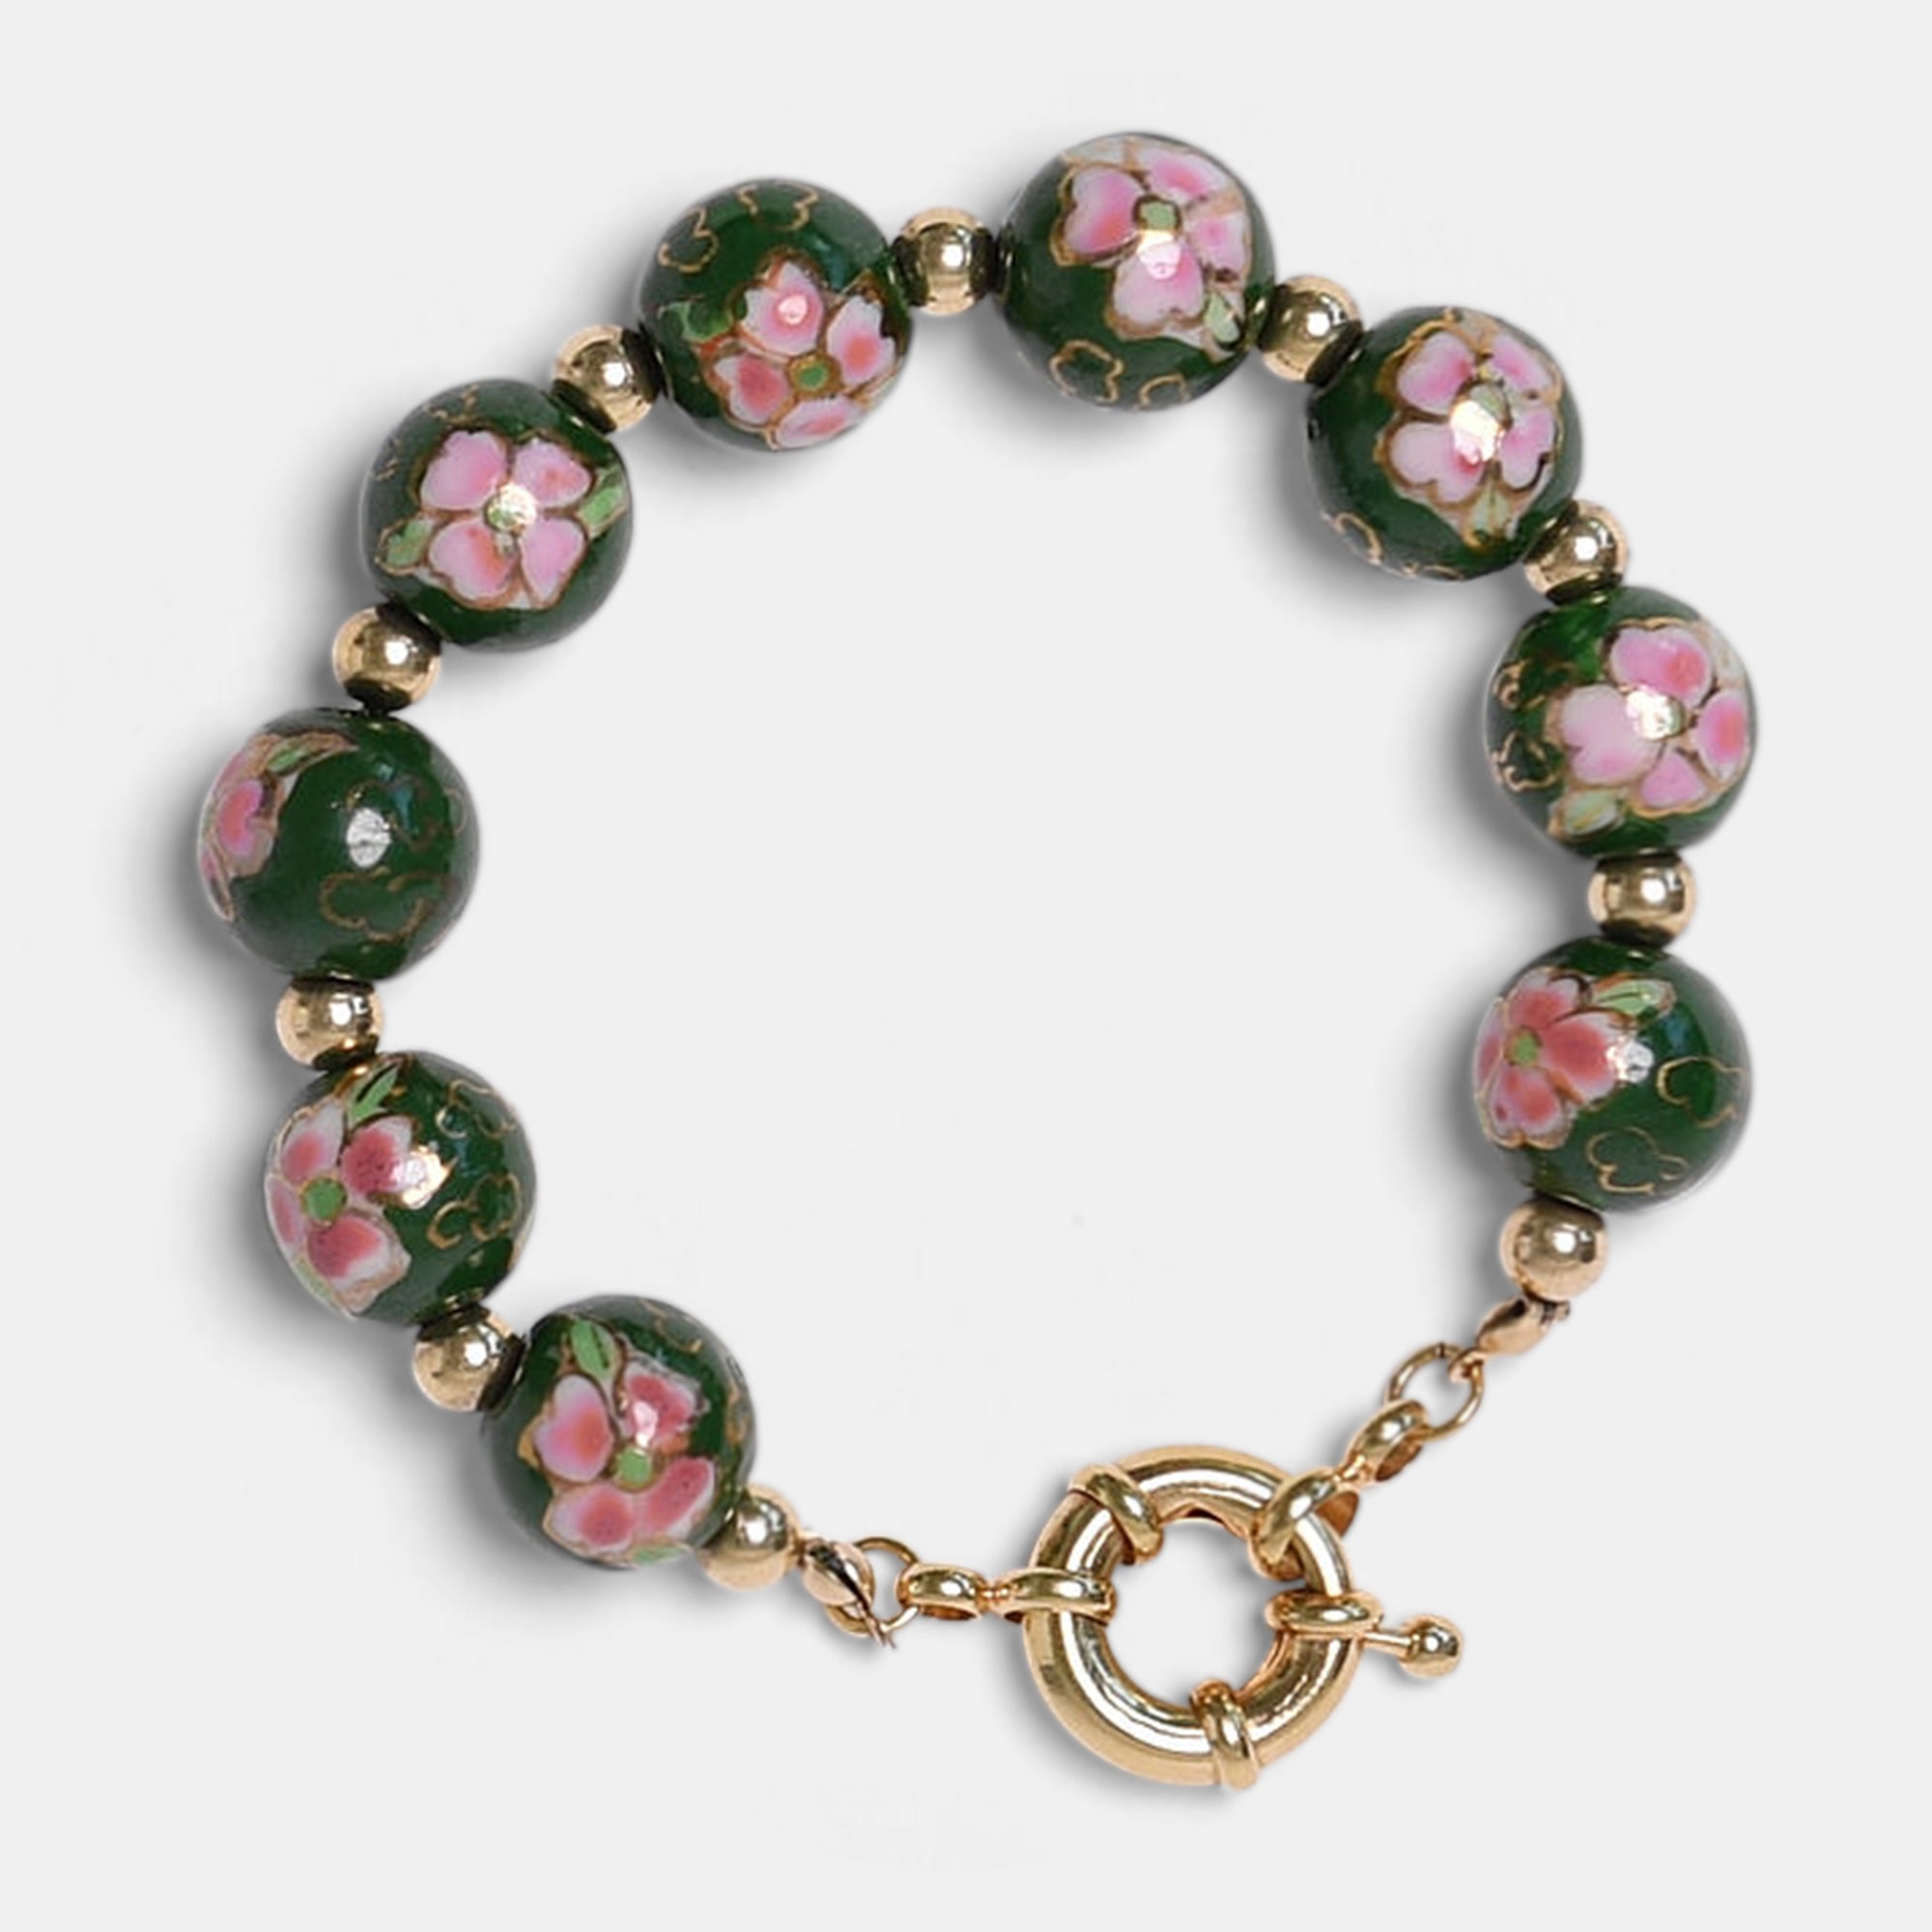 The La Flor Doce: Grande Bracelet